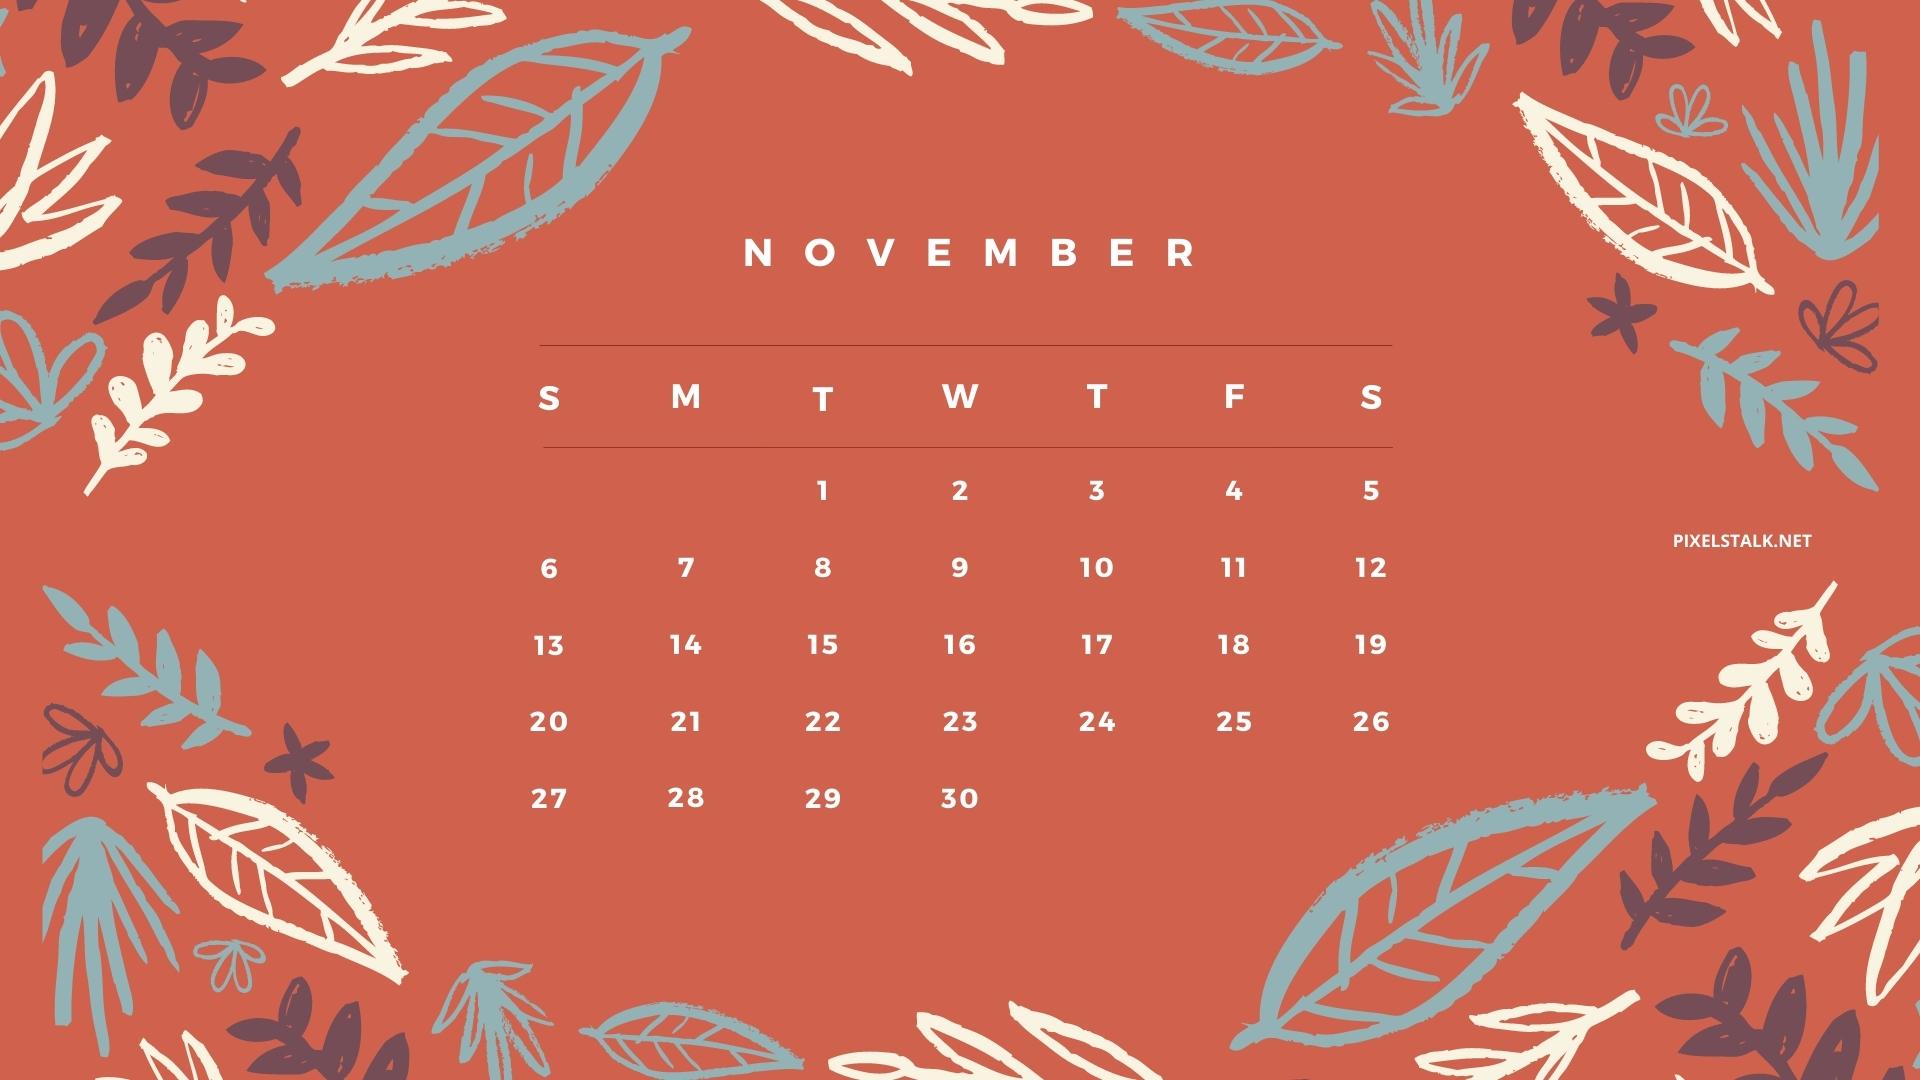 Với hình nền lịch tháng 11 tuyệt đẹp, bạn sẽ không còn cảm thấy nhàm chán khi truy cập máy tính hay điện thoại của mình. Hãy cùng tận hưởng một không gian tràn đầy sức sống và màu sắc cùng ngày mới nhé.